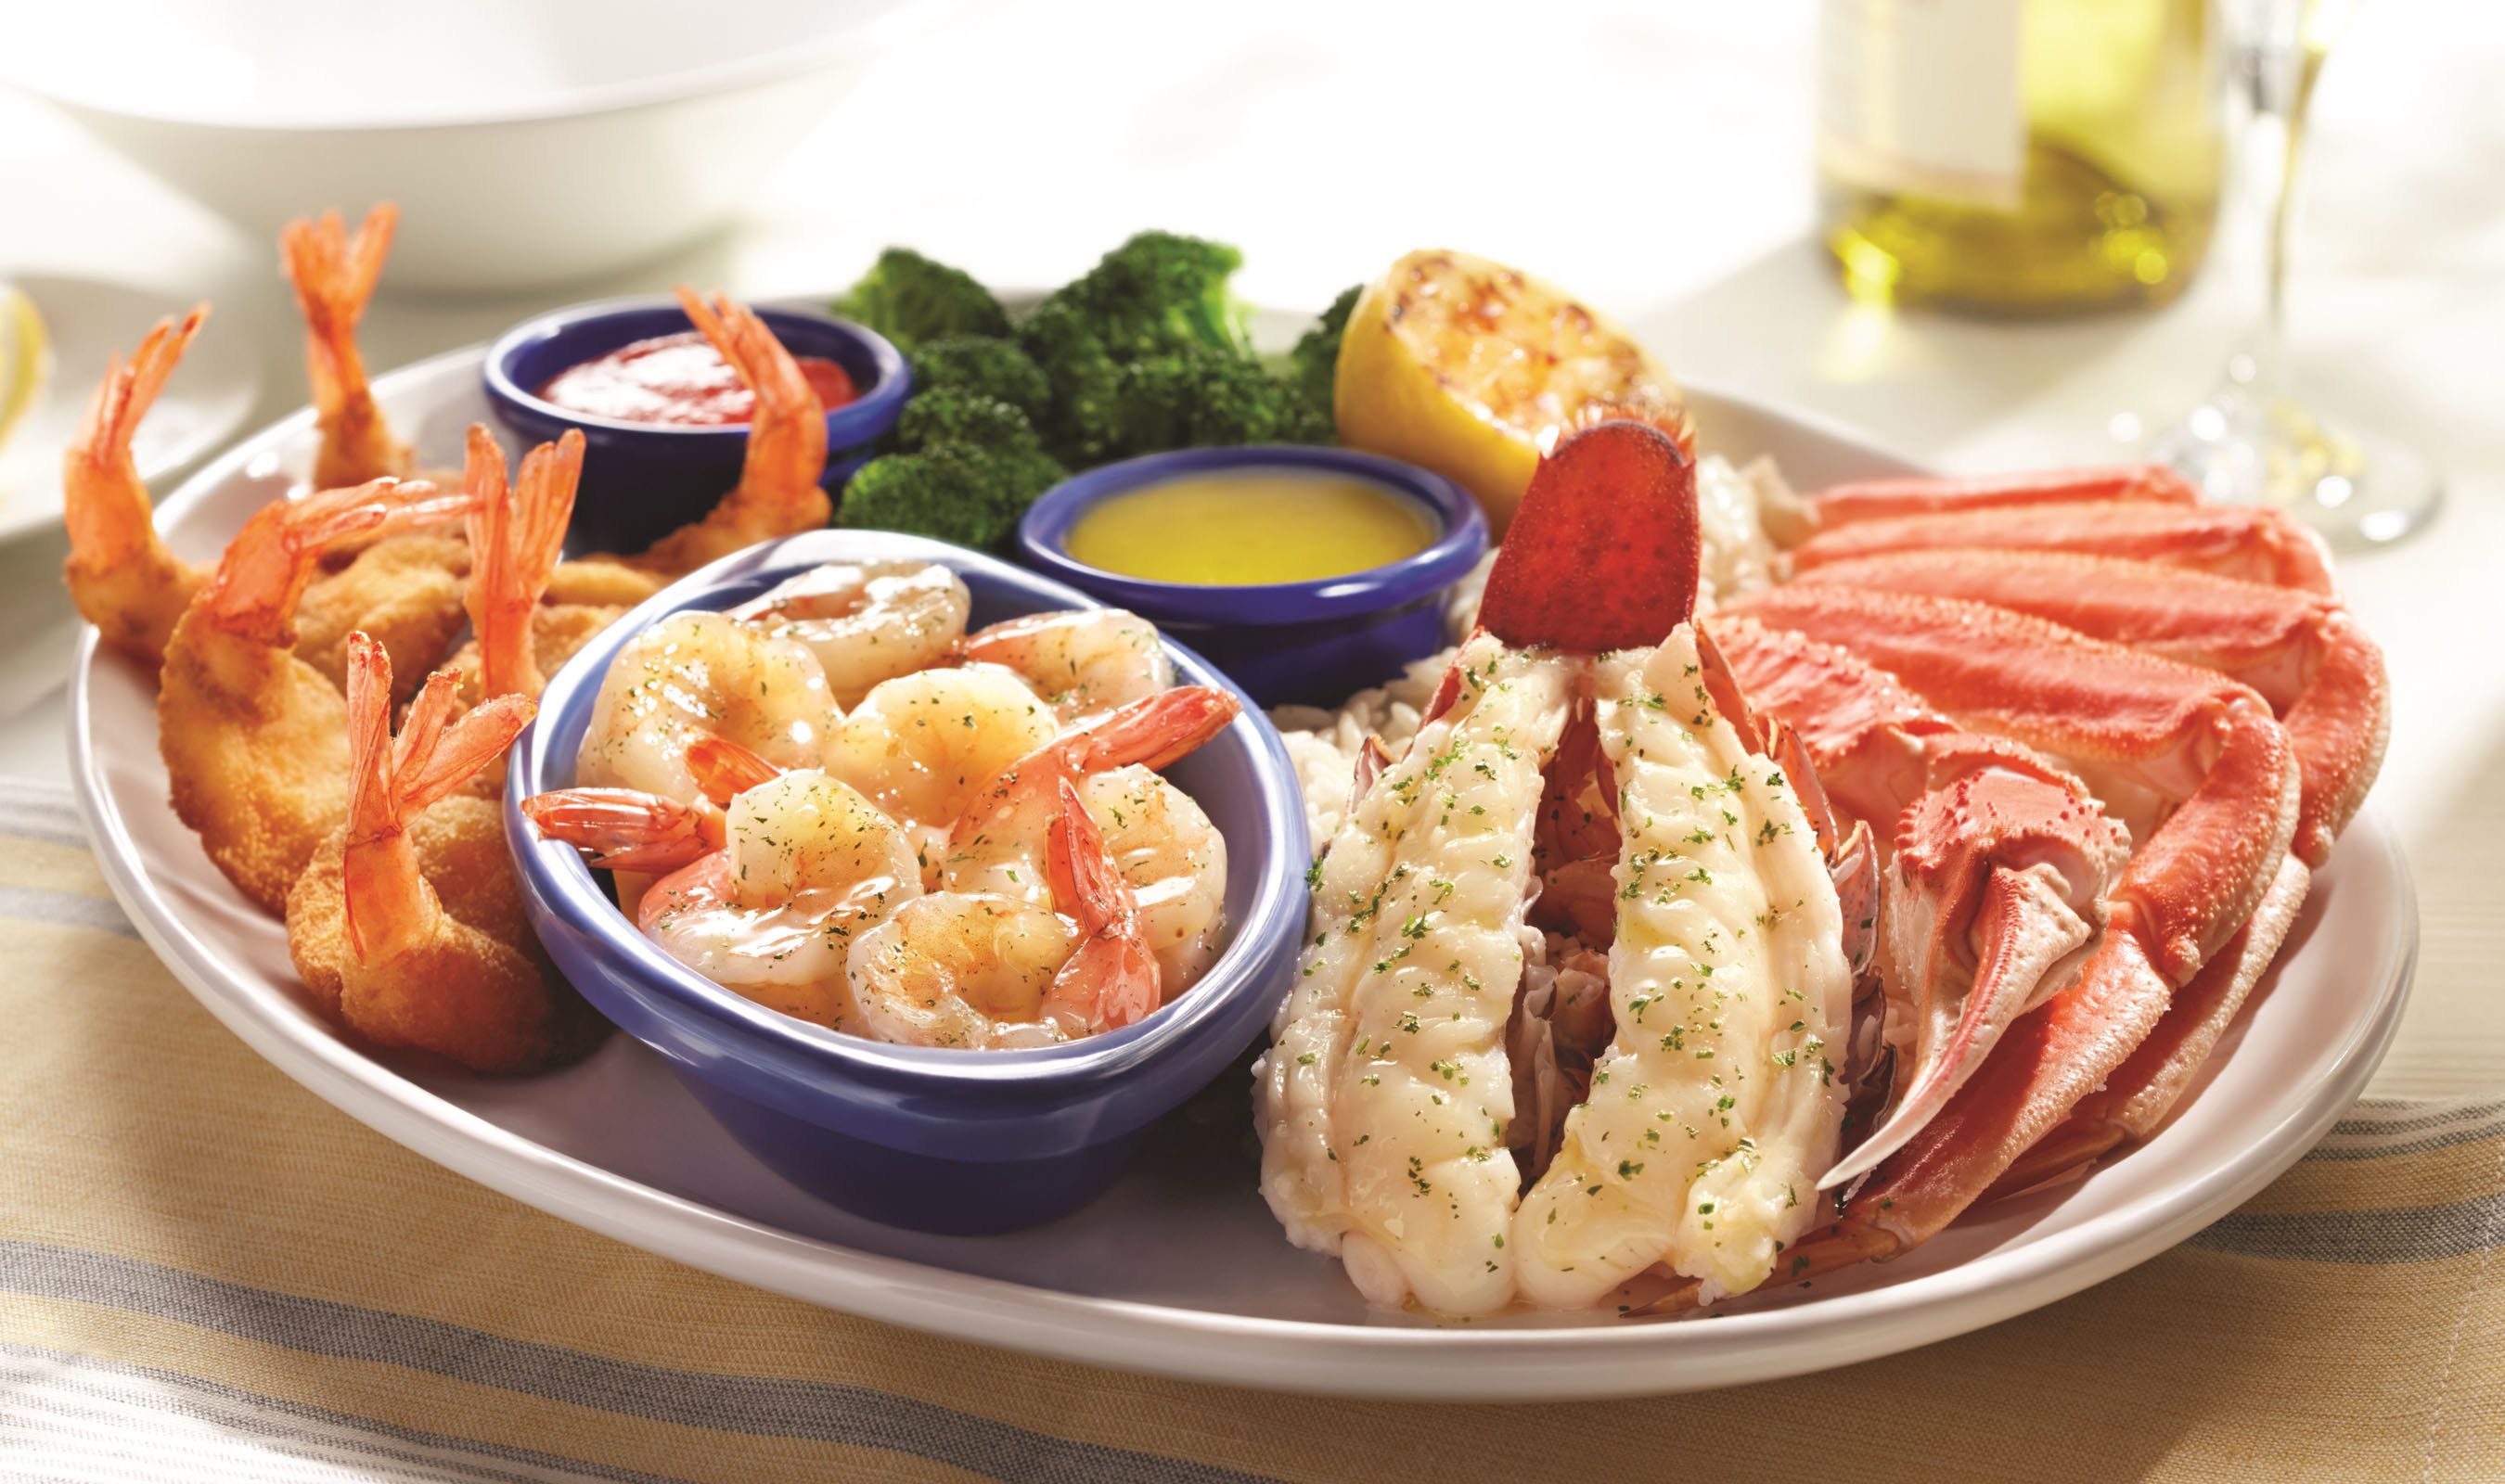 Red Lobster® Introduces Bigger, Better Shrimp To Menu